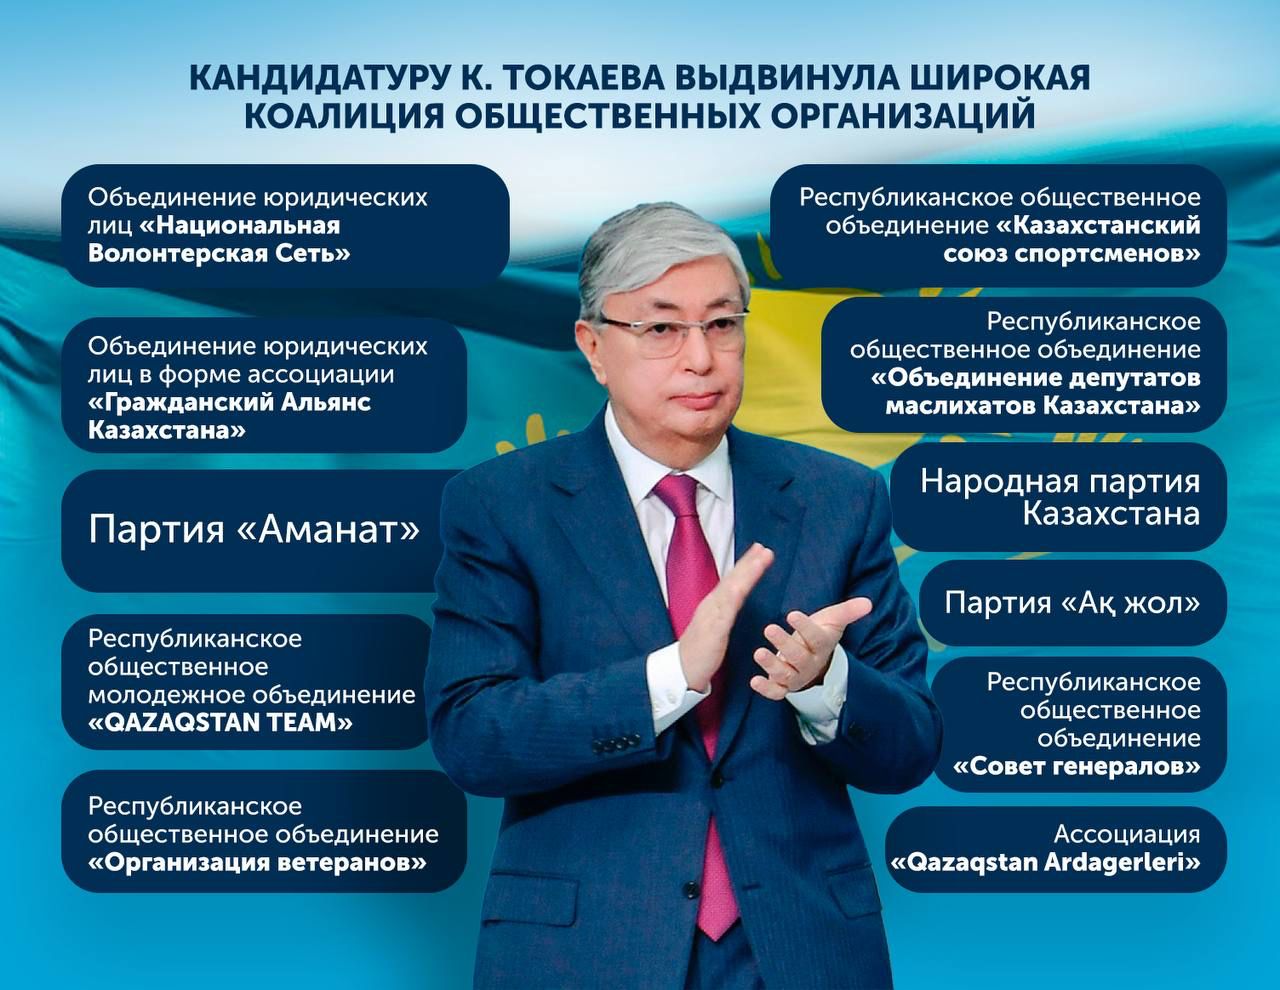 Кандидатуру К.Токаева выдвинула широкая коалиция общественных организаций